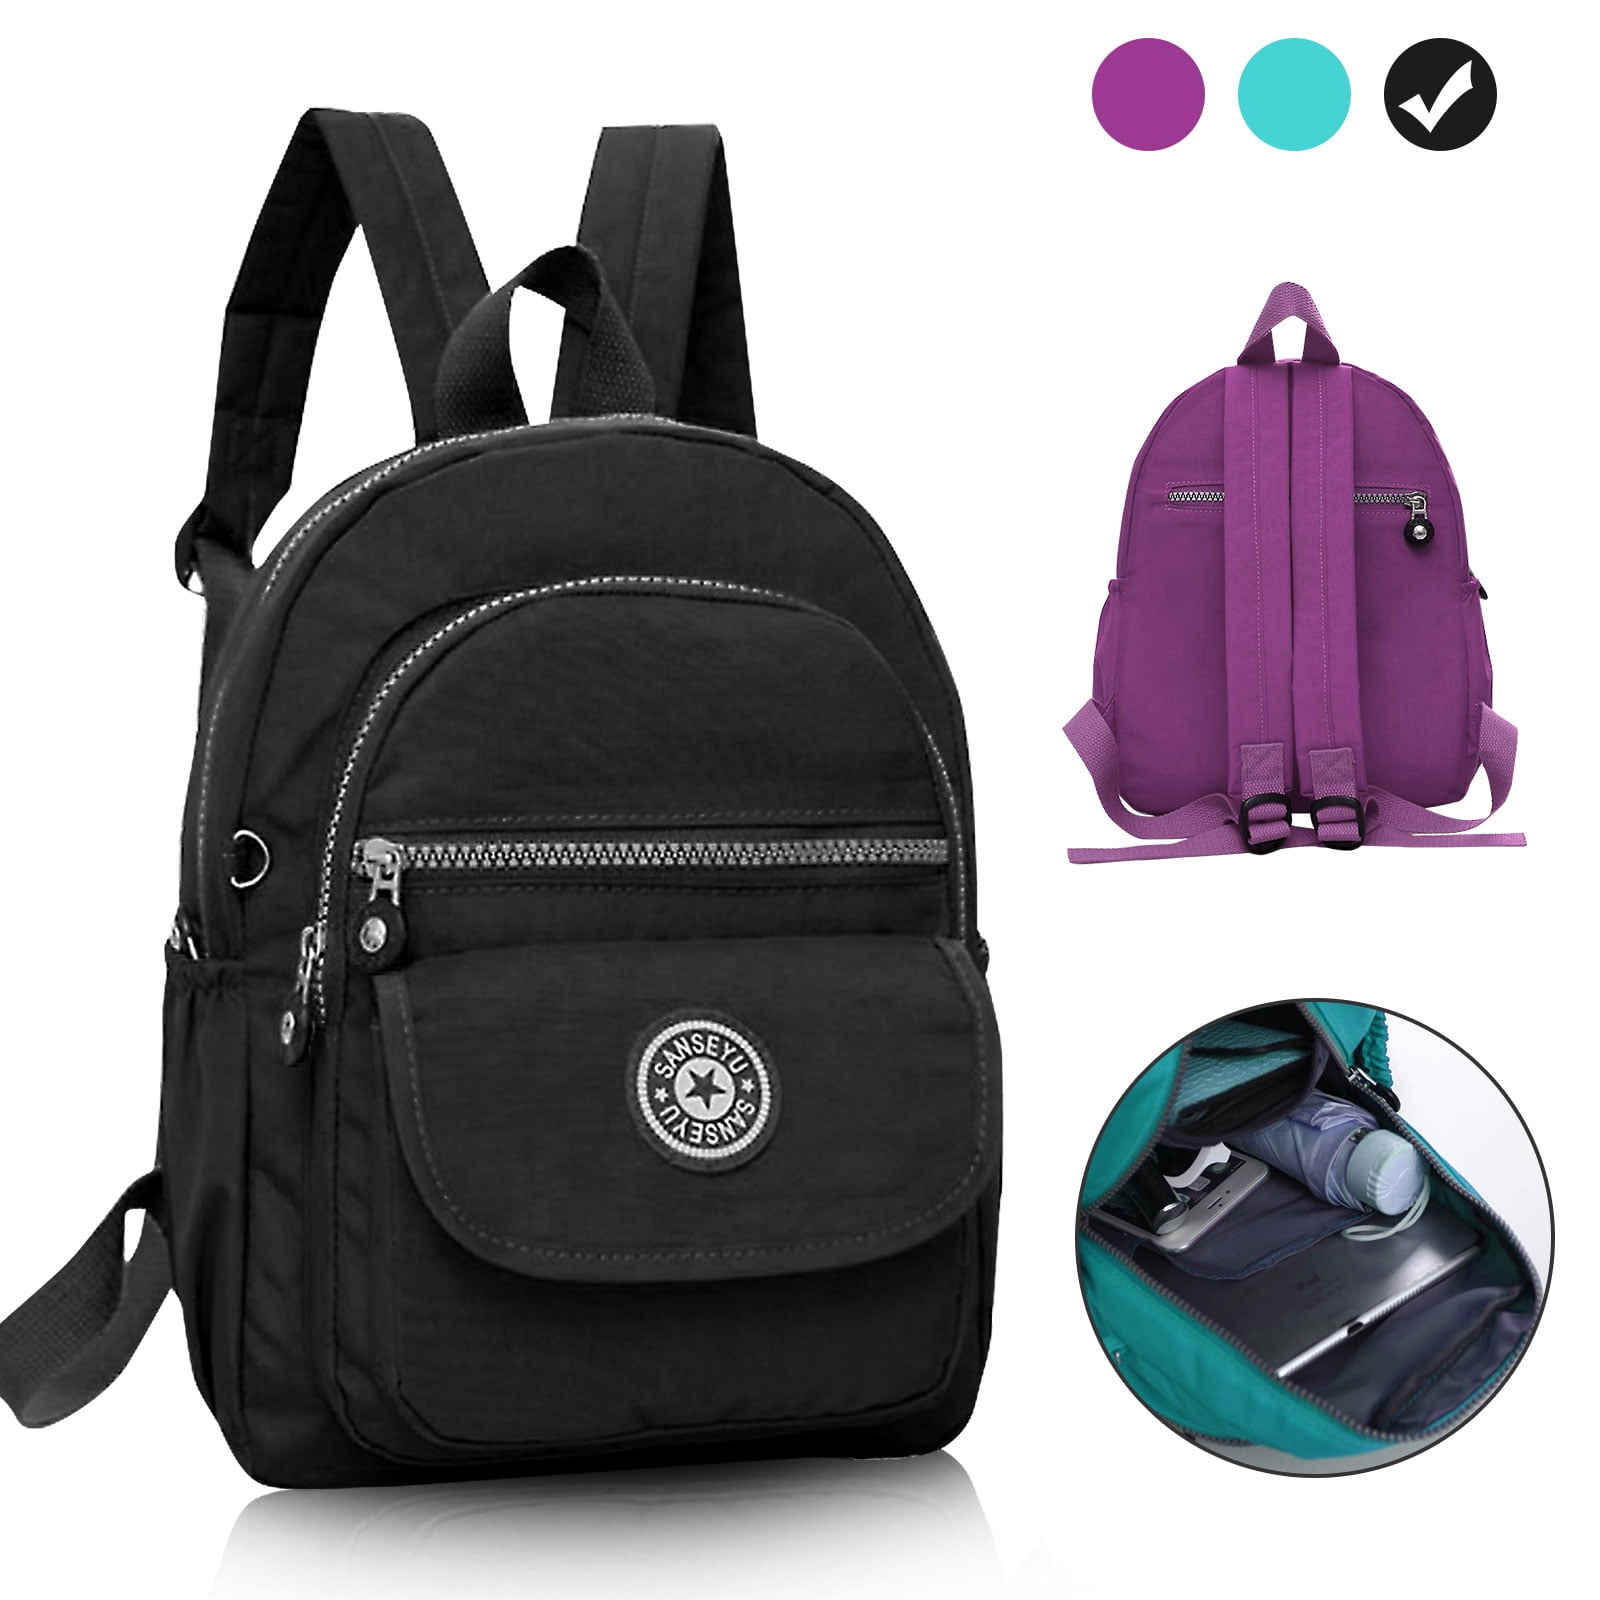 TSV - TSV Nylon Small Backpack for Women, Waterproof Mini Backpacks Light Outdoor Travel ...